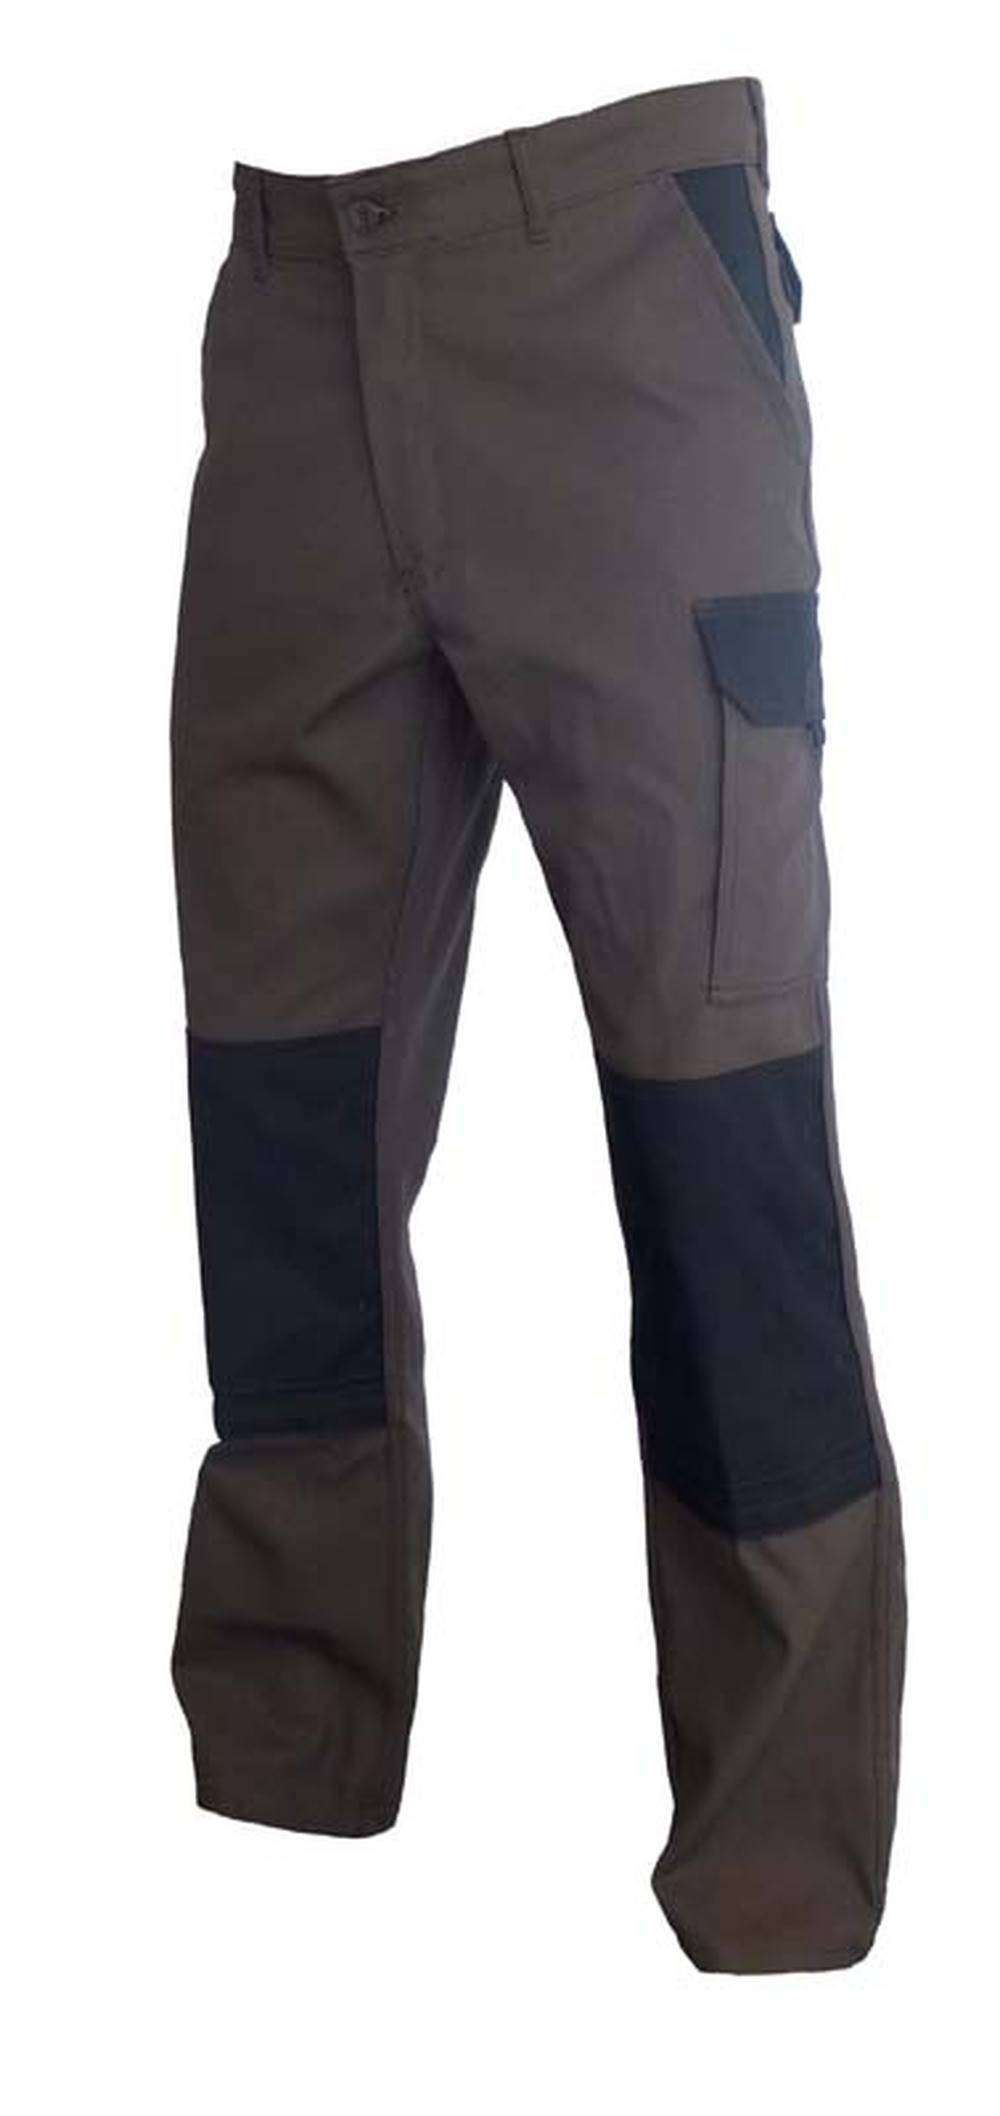 Pantalon TYPHON Choco/Noir - 310gr/m2 - Poche genoux EN14404 Cordura - T2(44-46)